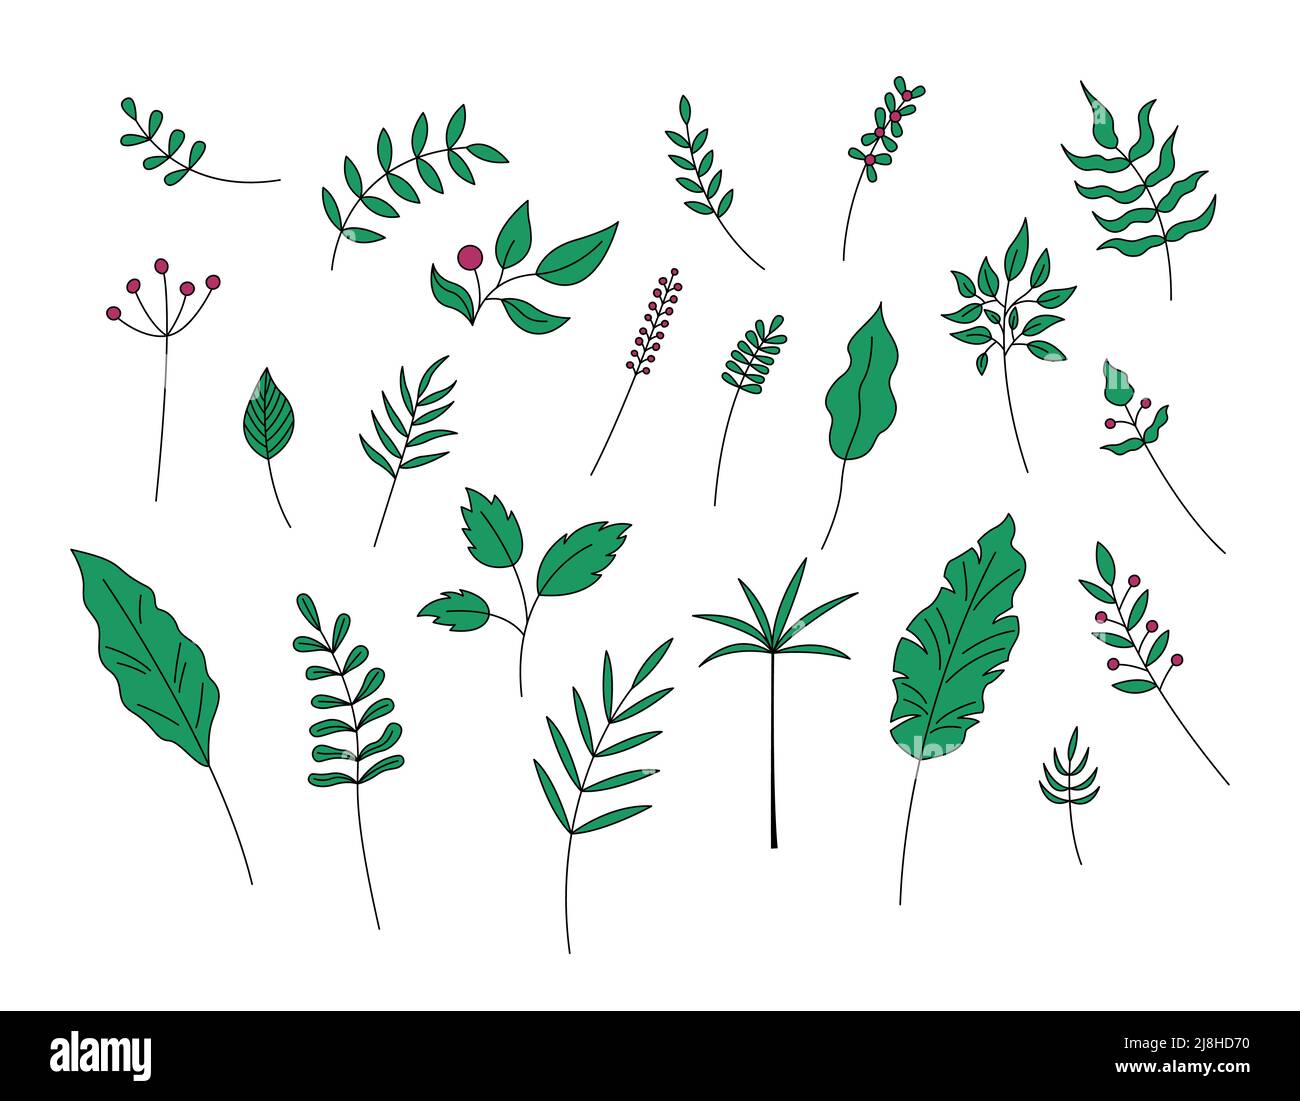 Blätter und Beeren isoliert. Vektor-Set von grünen Pflanzen dekorative Elemente auf weißem Hintergrund. Einfache handgezeichnete Blattobjekte. Stock Vektor